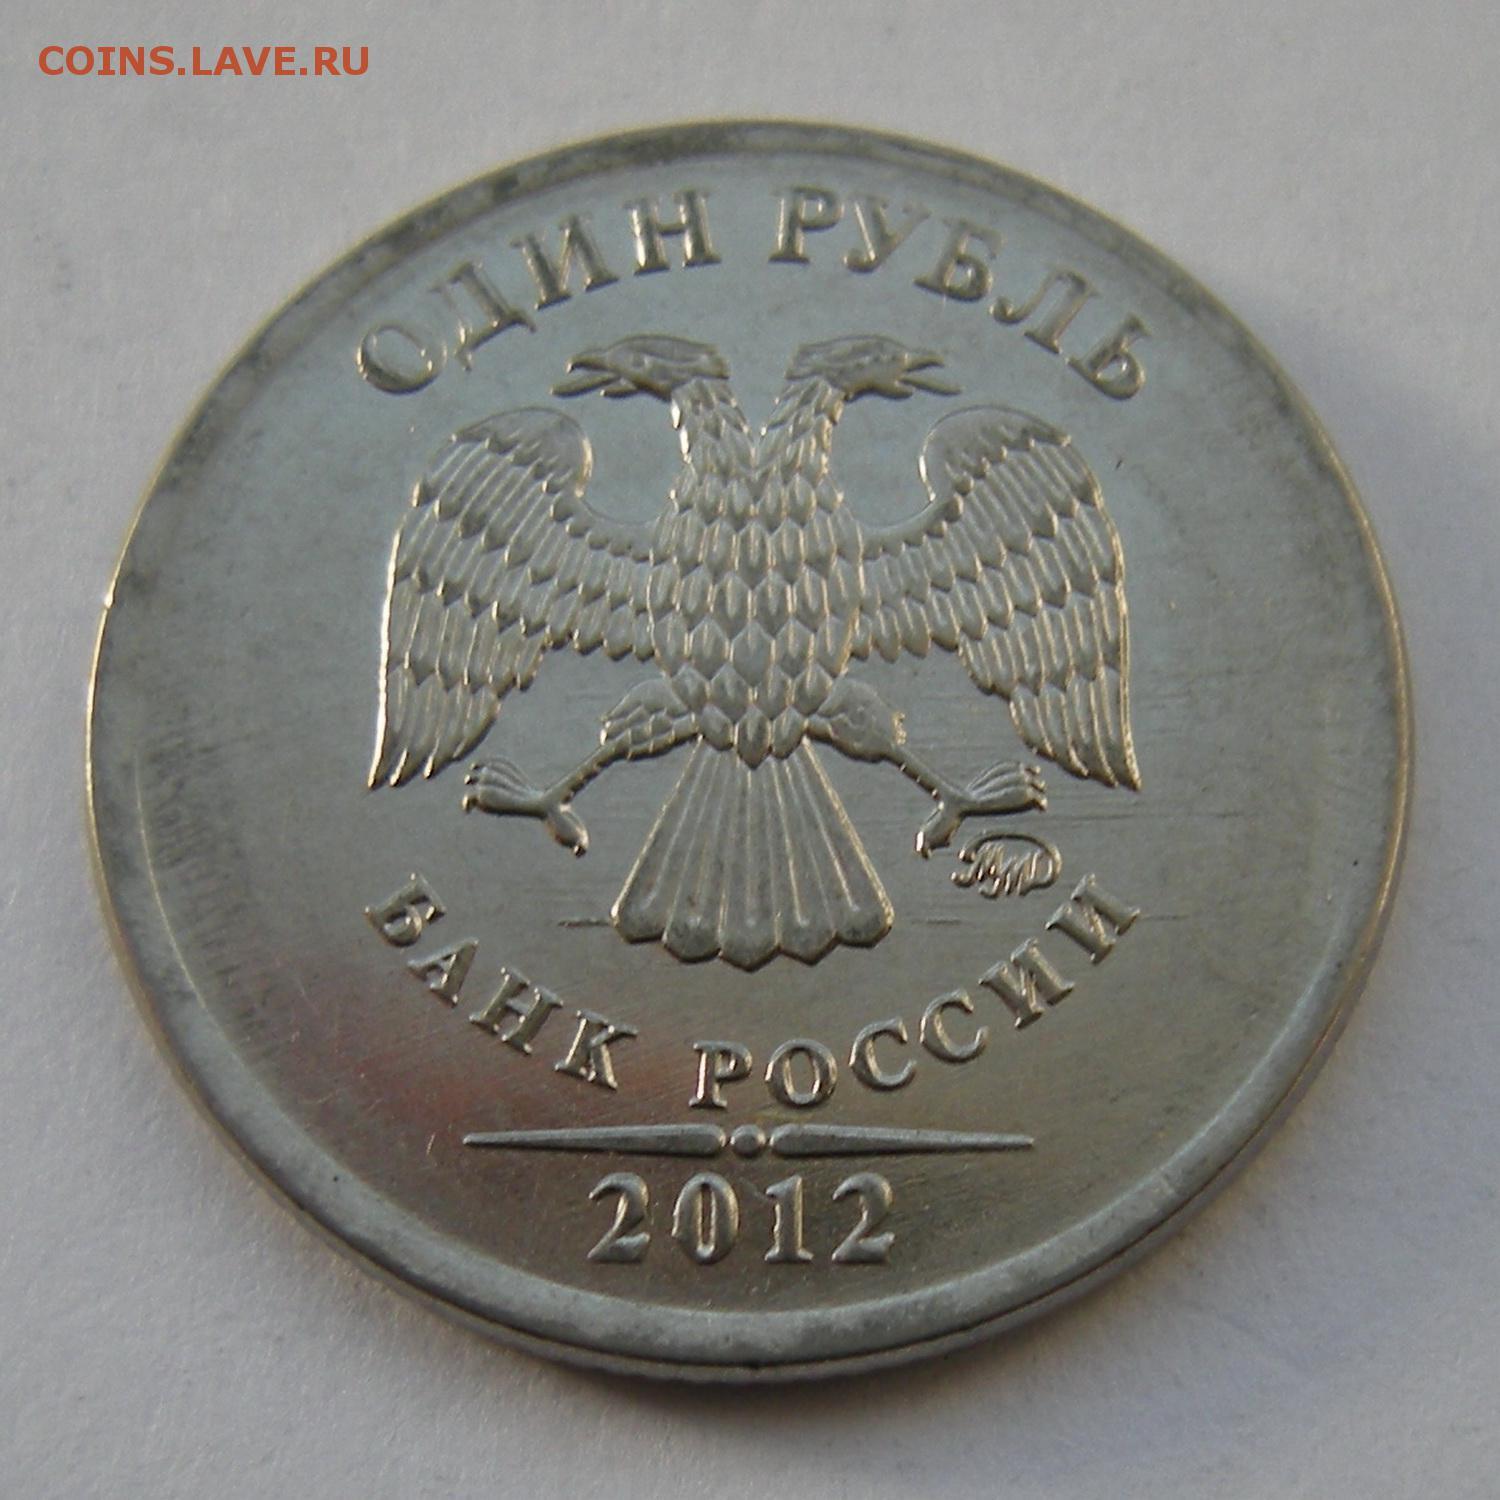 80 российских рублей. 1 Рубль 2012 года. Брак монет один рубль 2012 года стоимость ММД. 2рубл2012г Кутузов ММД цена.